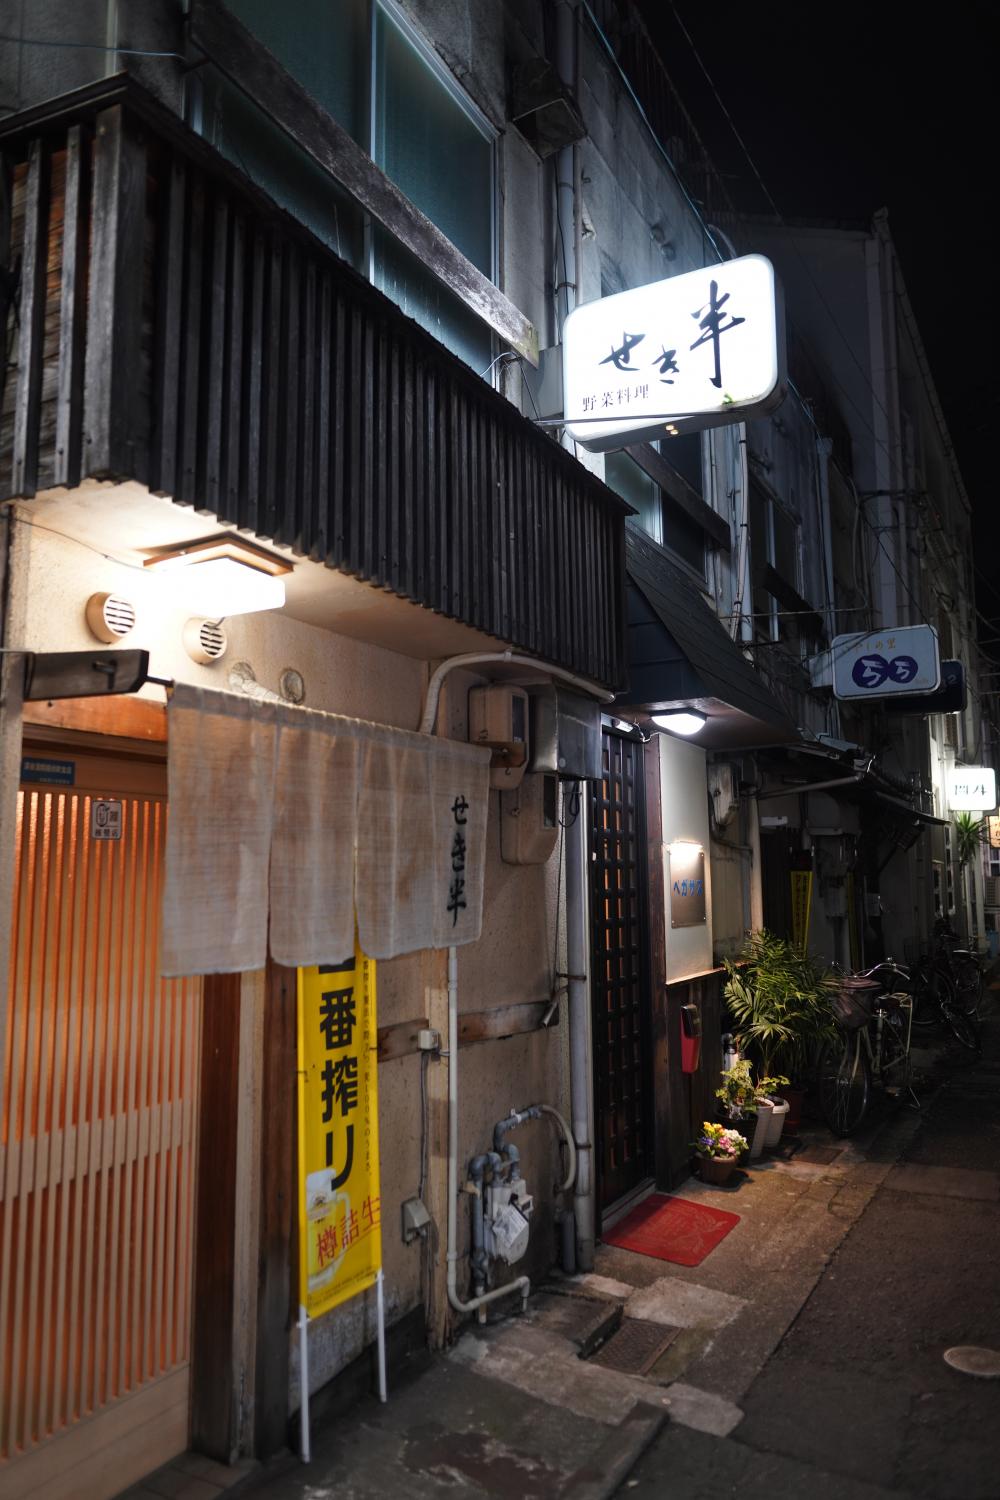 まるでタイムスリップしたかのような…
徳島のディープな裏路地と横丁を紹介！
人情味溢れる店主と、昭和の風情漂う名店酒場。